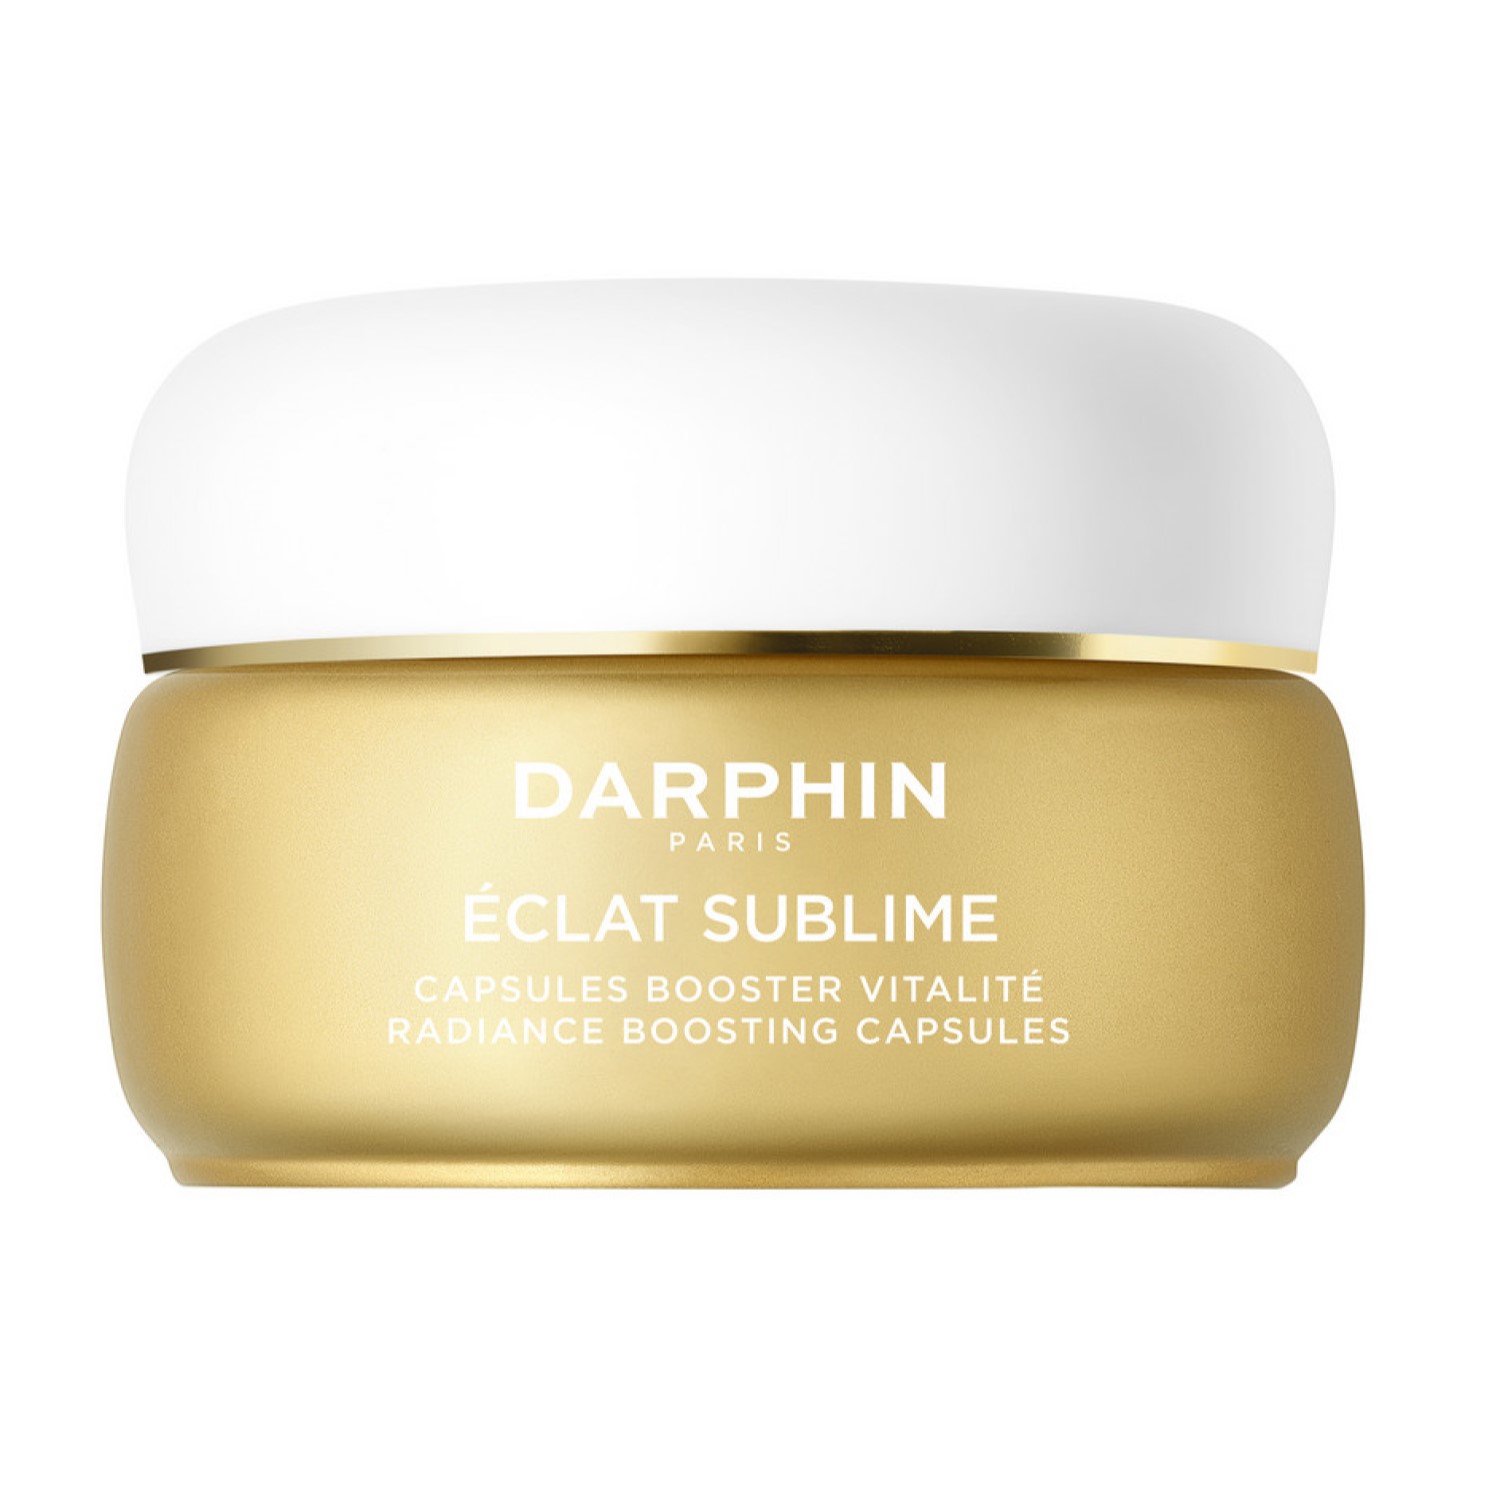 Darphin Eclat Sublime Radiance Boosting Capsules with Pro-Vitamin C & E Капсулы для сияния кожи с провитаминами С и Е